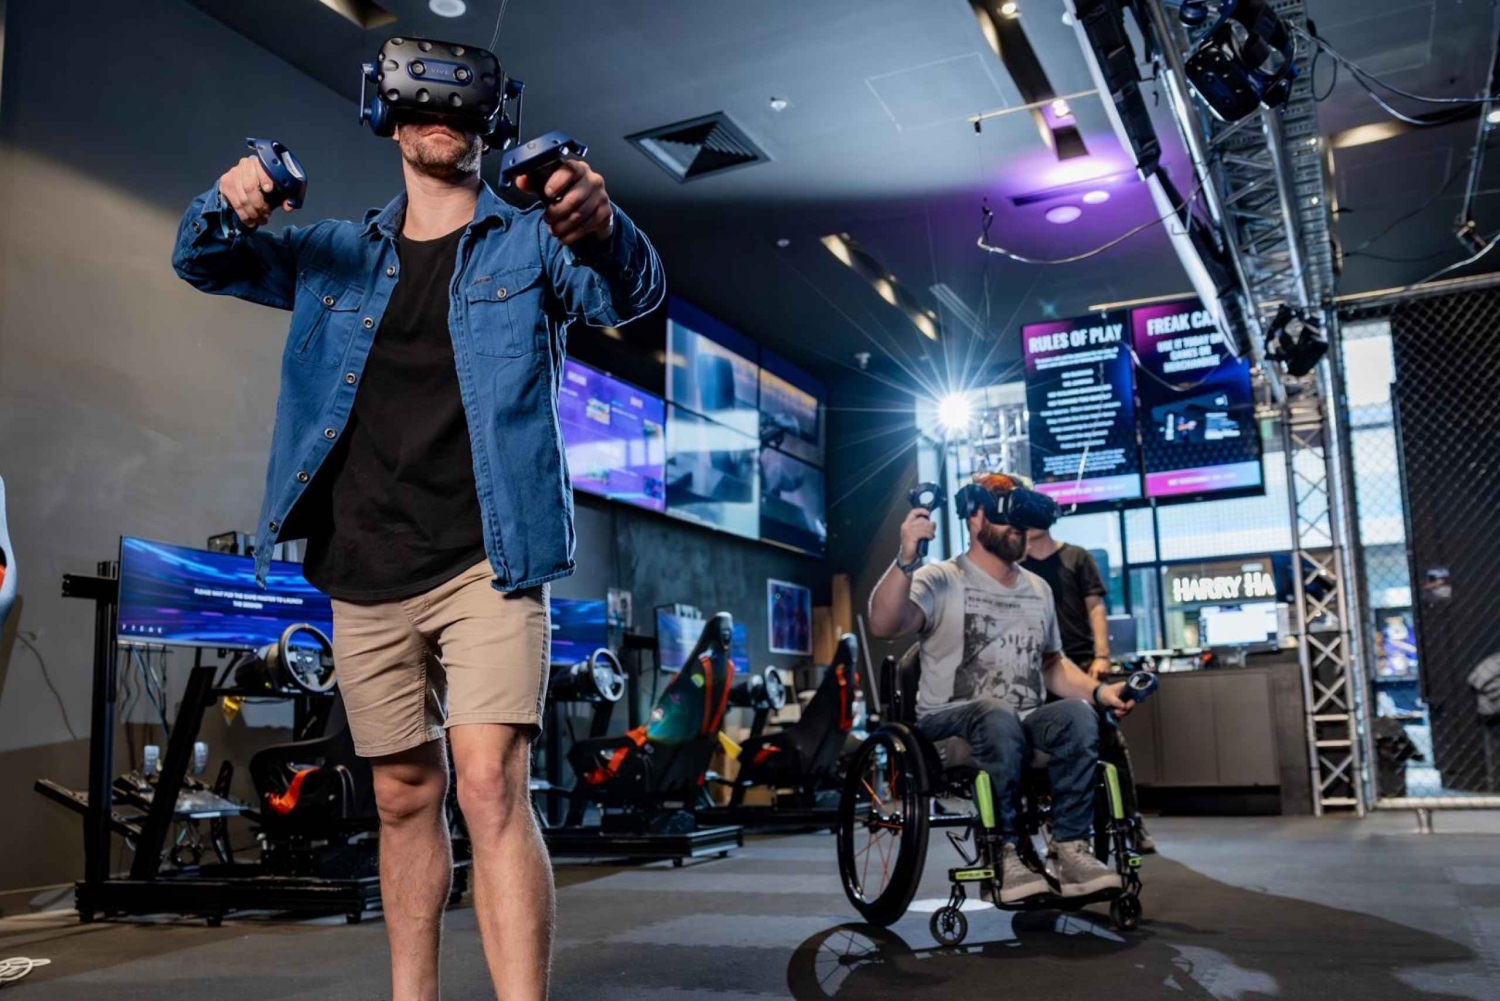 Penrith : 1 heure d'expérience de réalité virtuelle dans une salle d'arcade